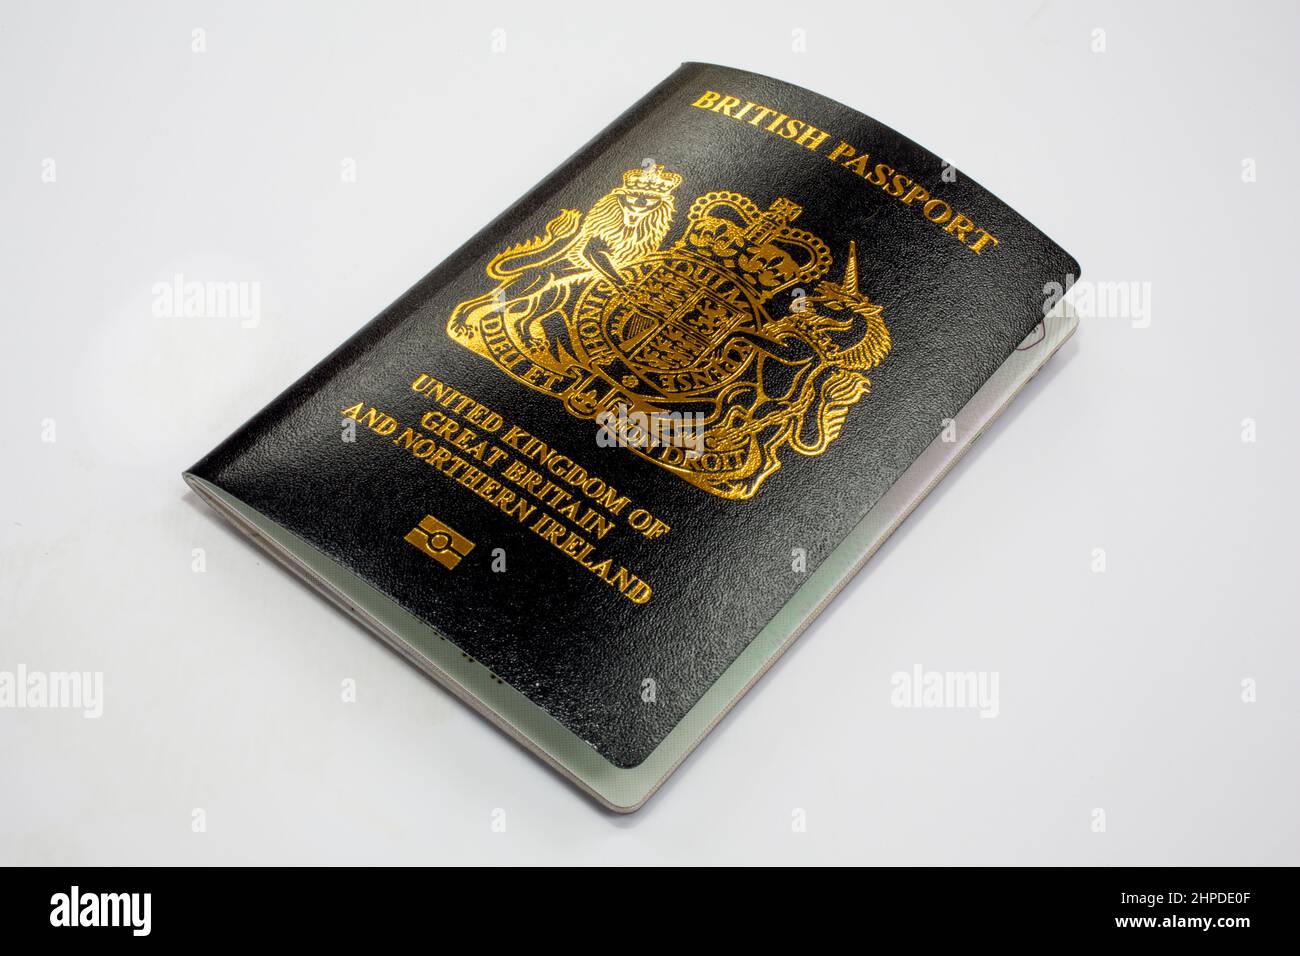 New British Passport. Stock Photo